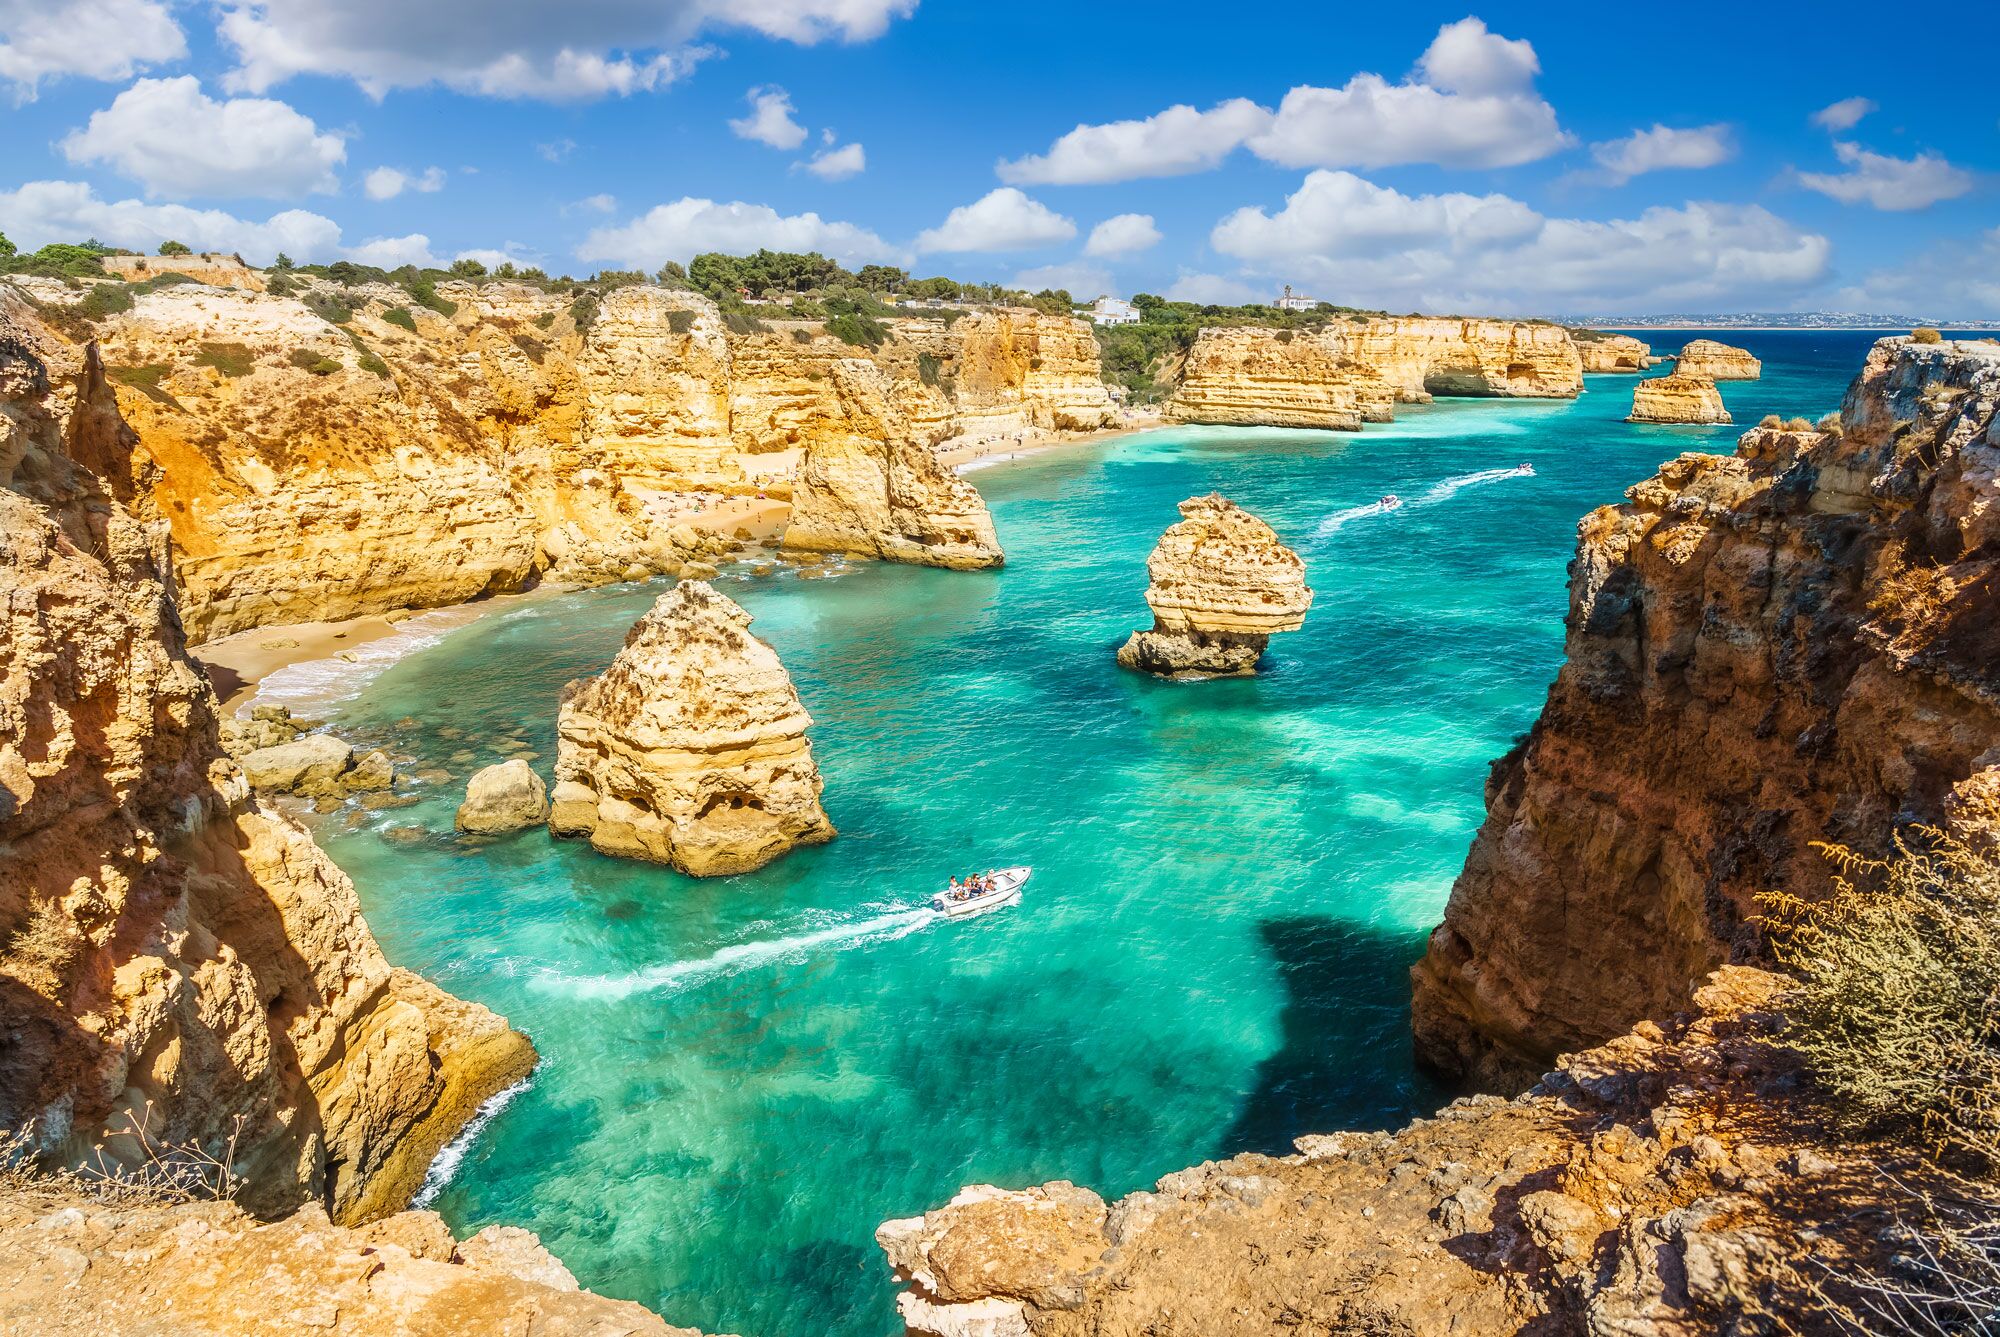 Los mejores hoteles y casas de vacaciones cerca de las playas del Algarve (35 consejos)